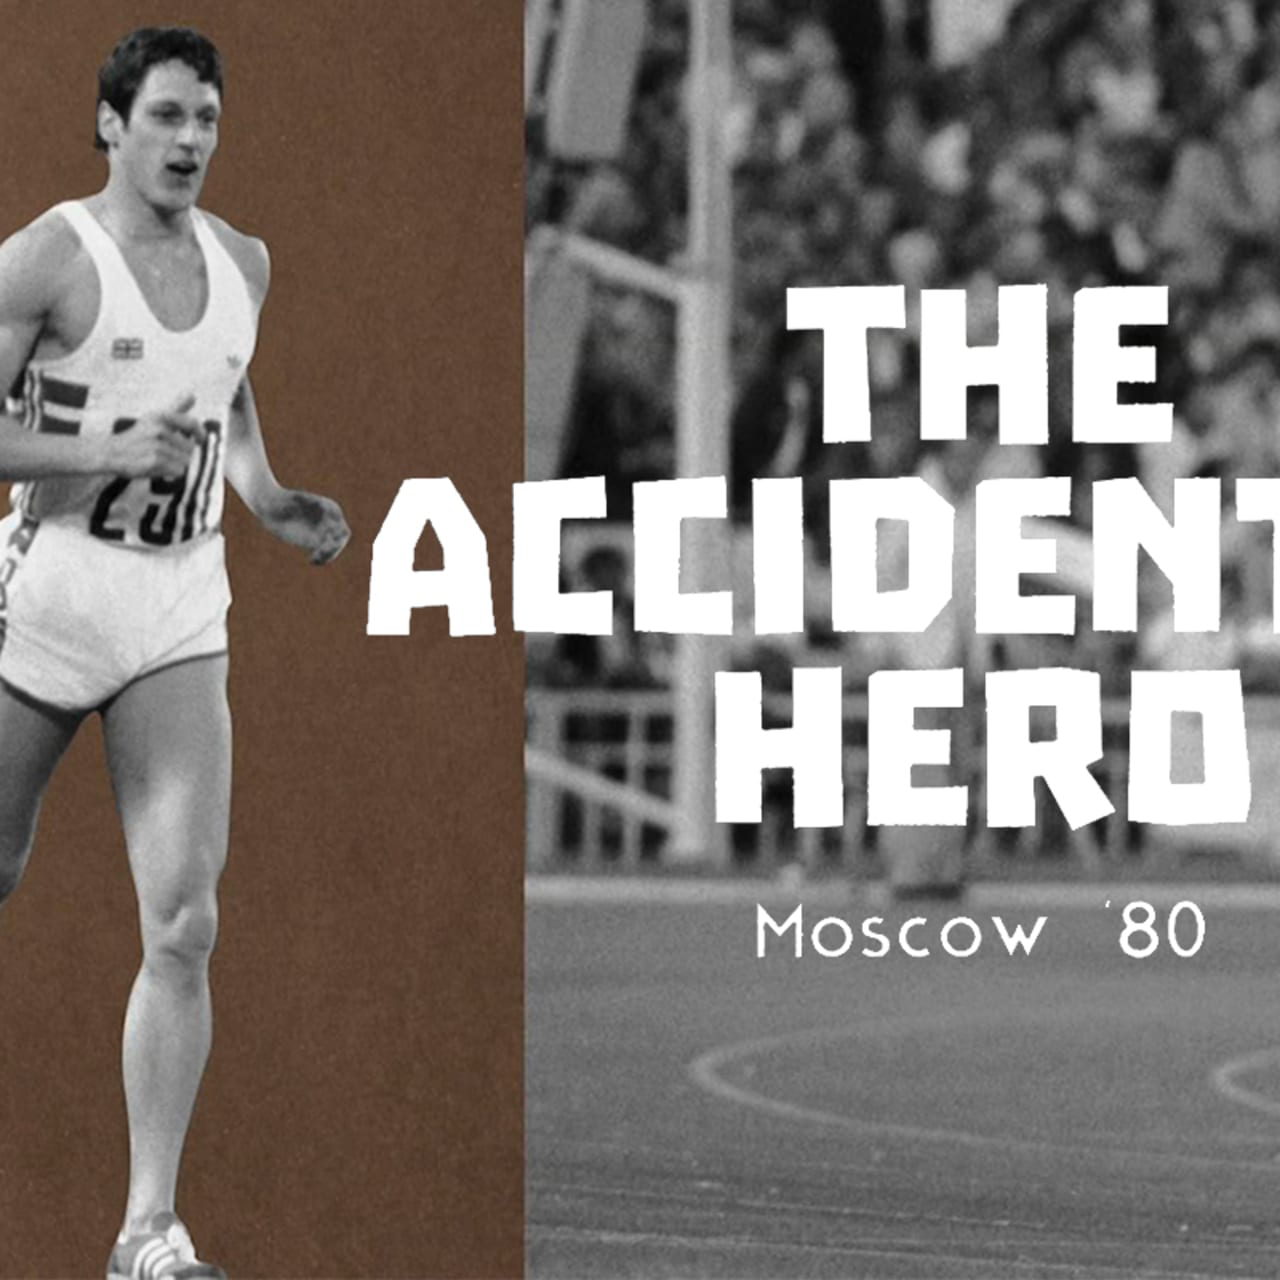 モスクワ1980 アラン ウェルズに転がり込んだ金メダル